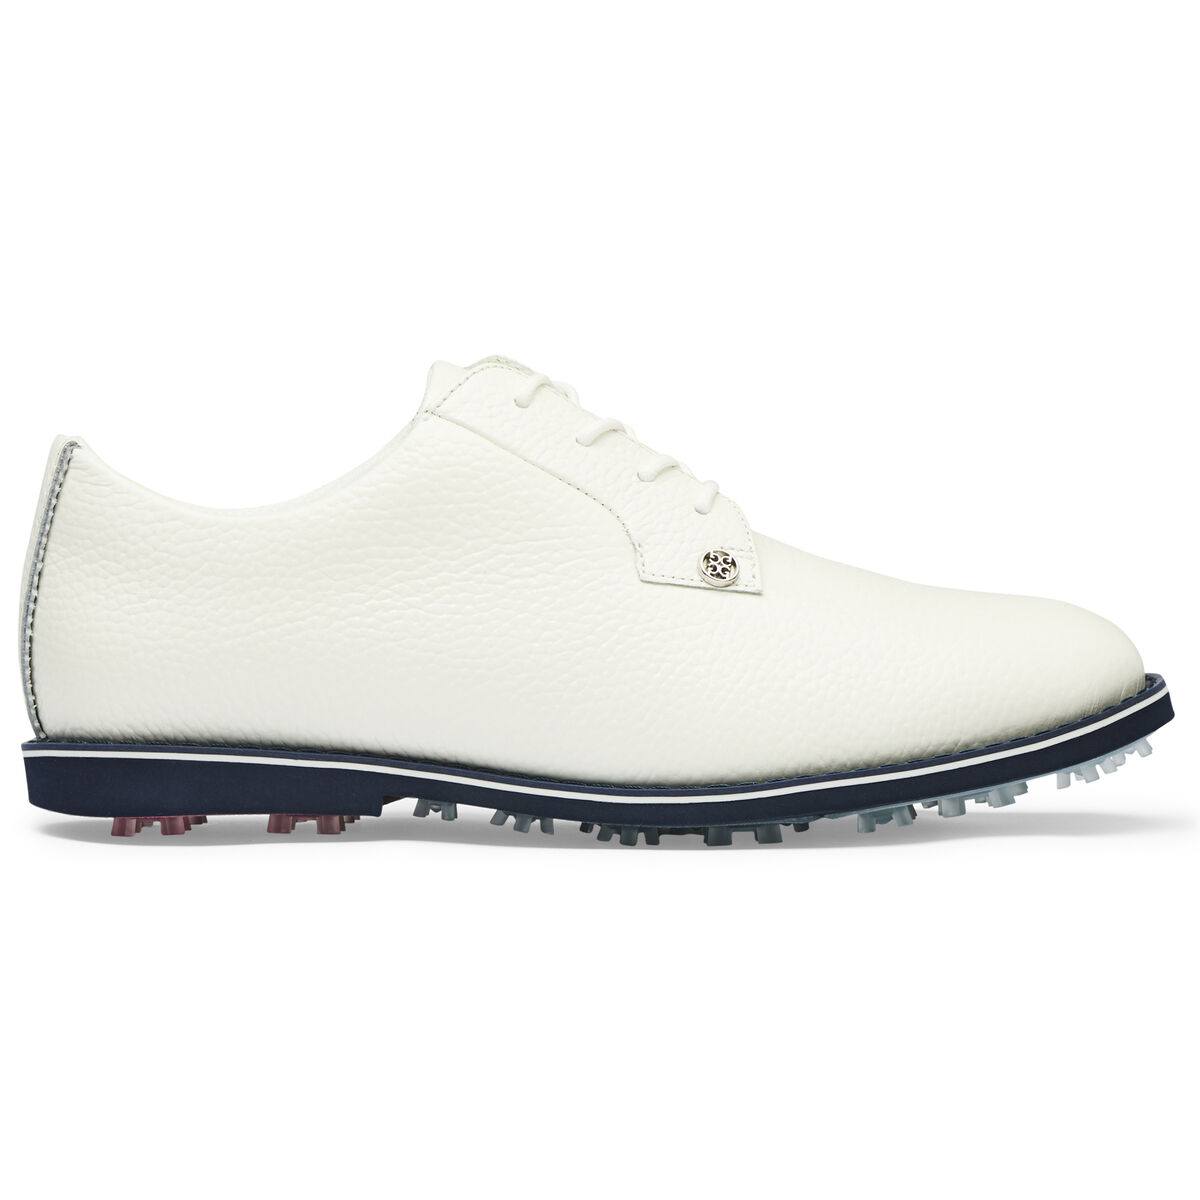 지포어 G/FORE Gallivanter Womens Golf Shoe,White